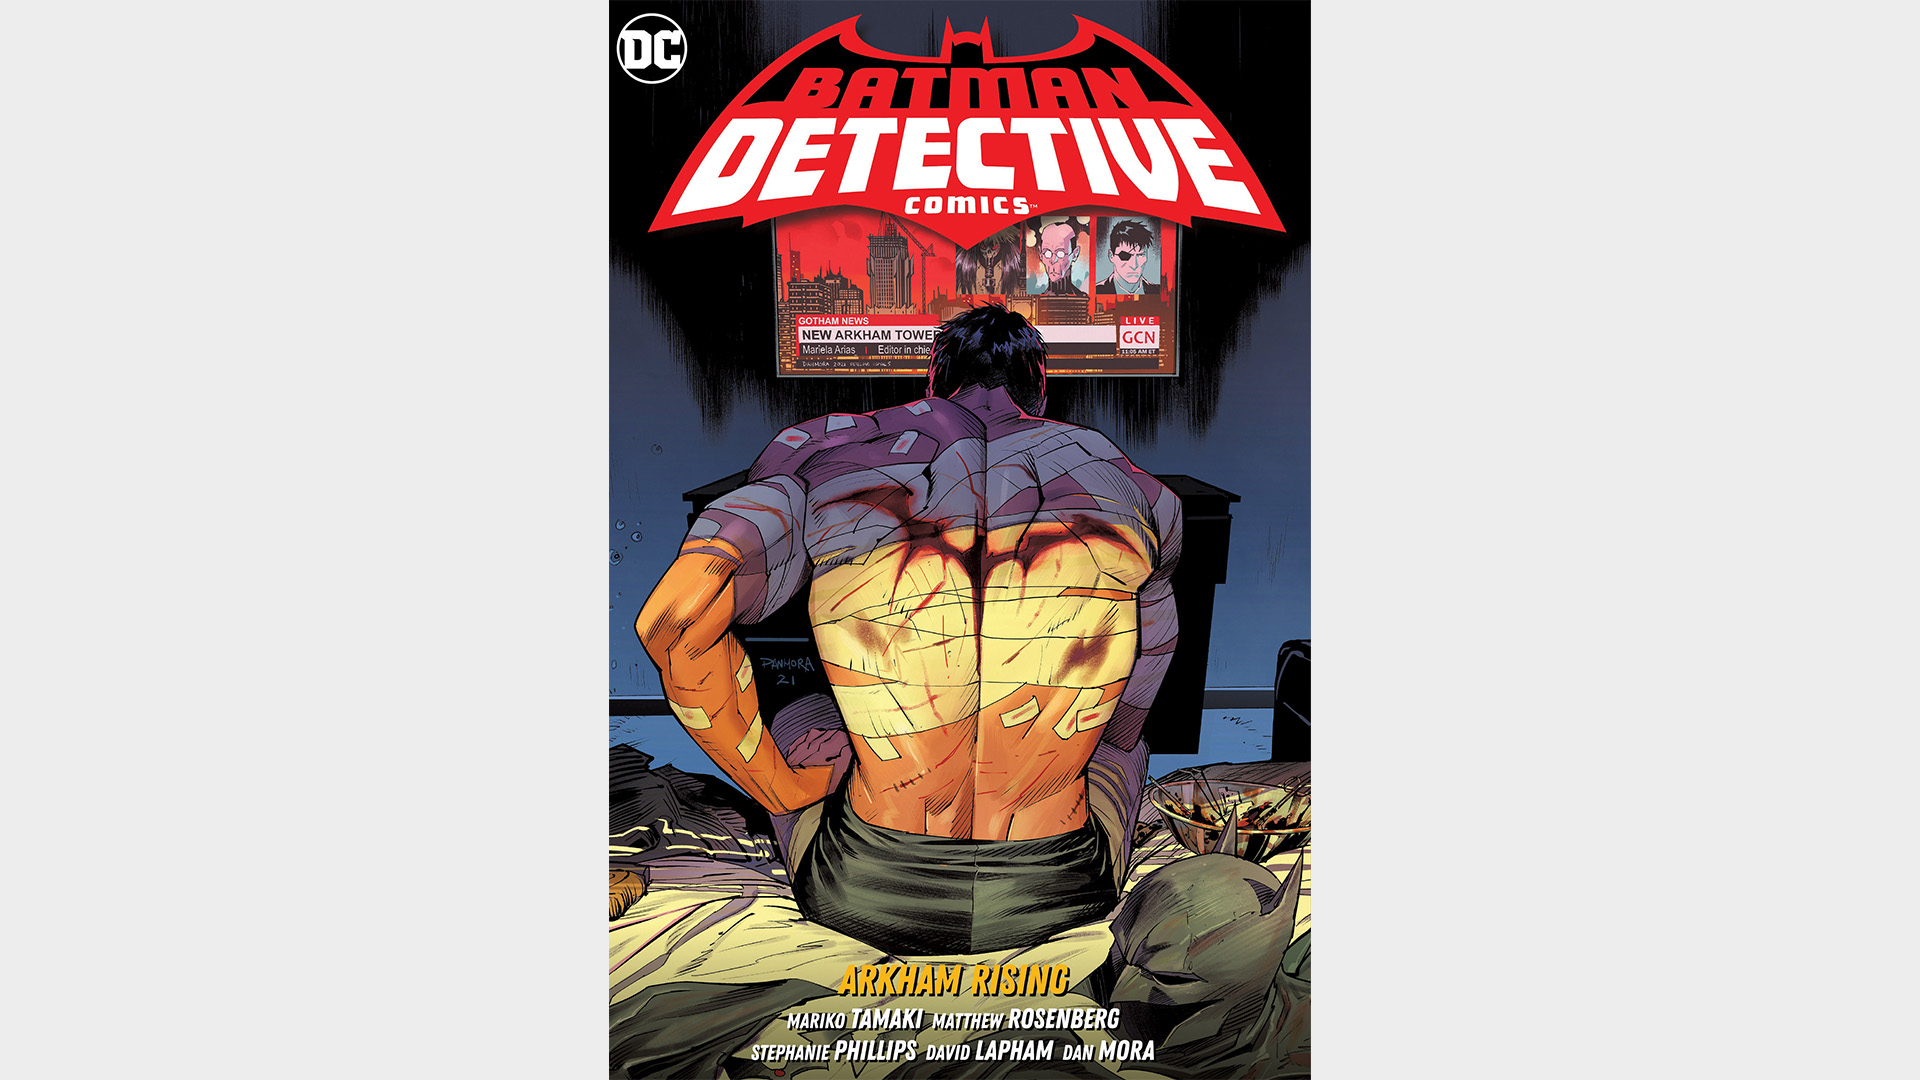 BATMAN: DETECTIVE COMICS VOL. 3: ARKHAM RISING